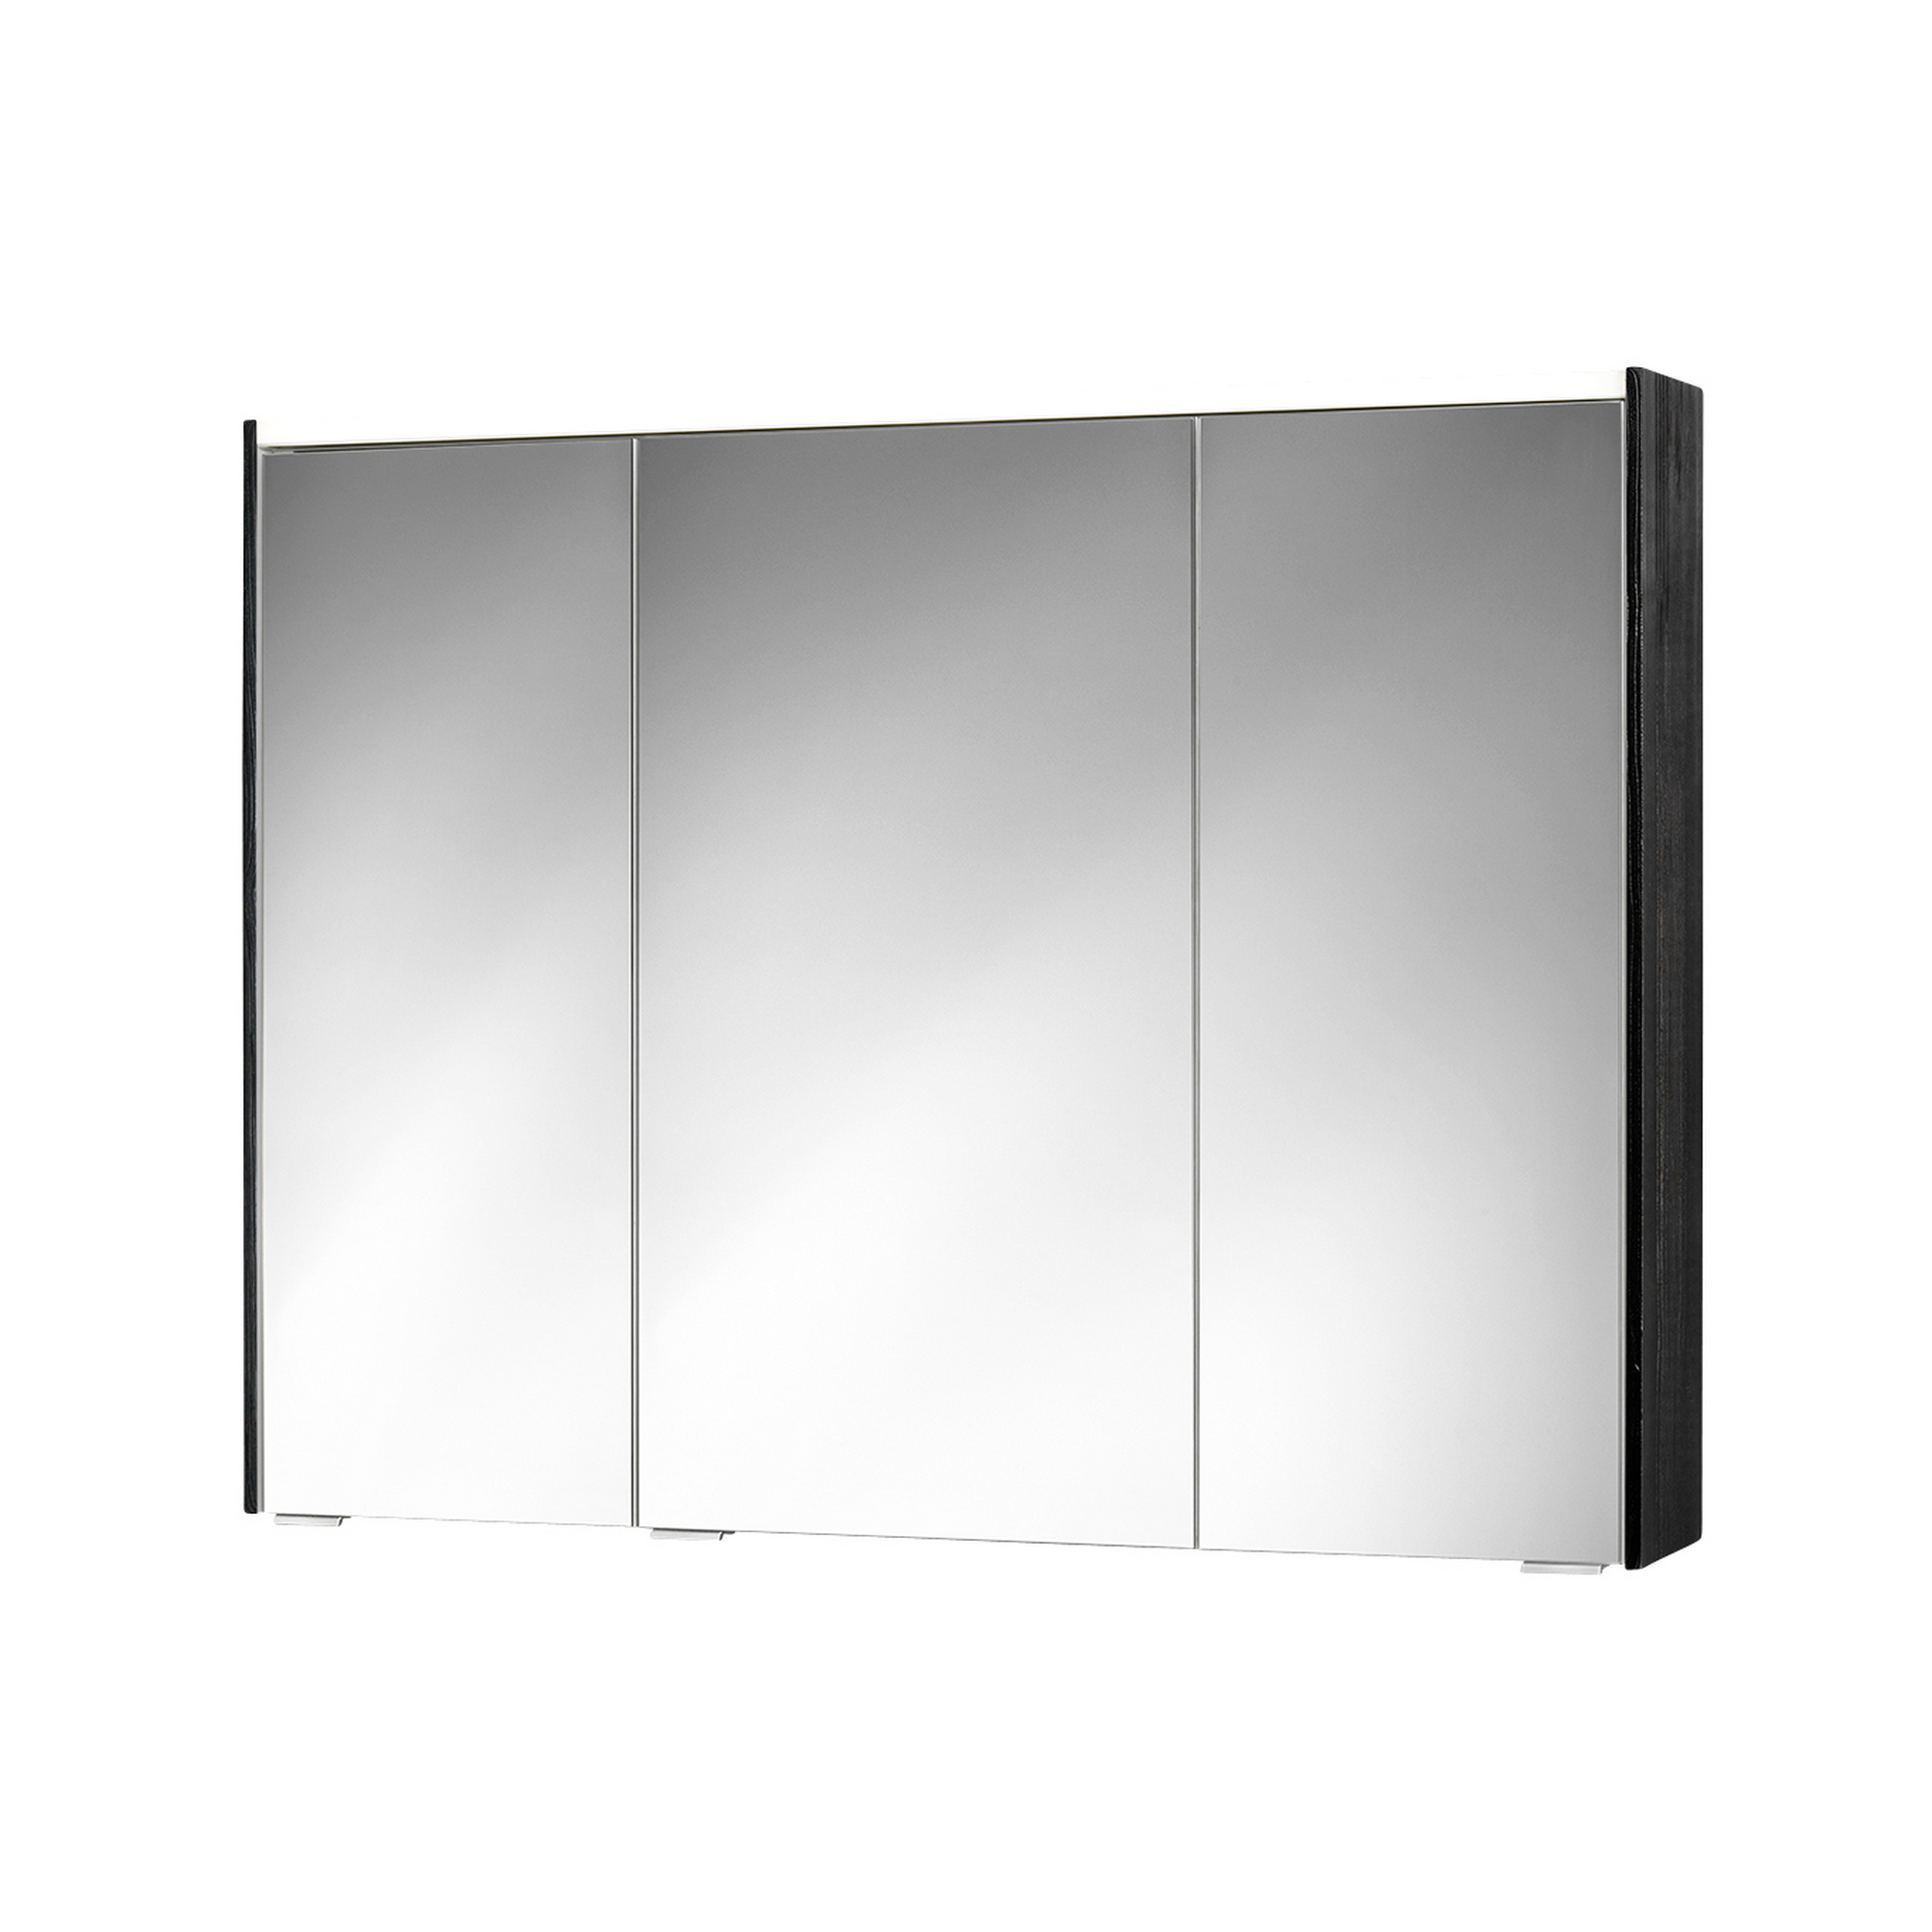 LED-Spiegelschrank 'KHX' anthrazit 100,4 x 74 x 14,2 cm + product picture